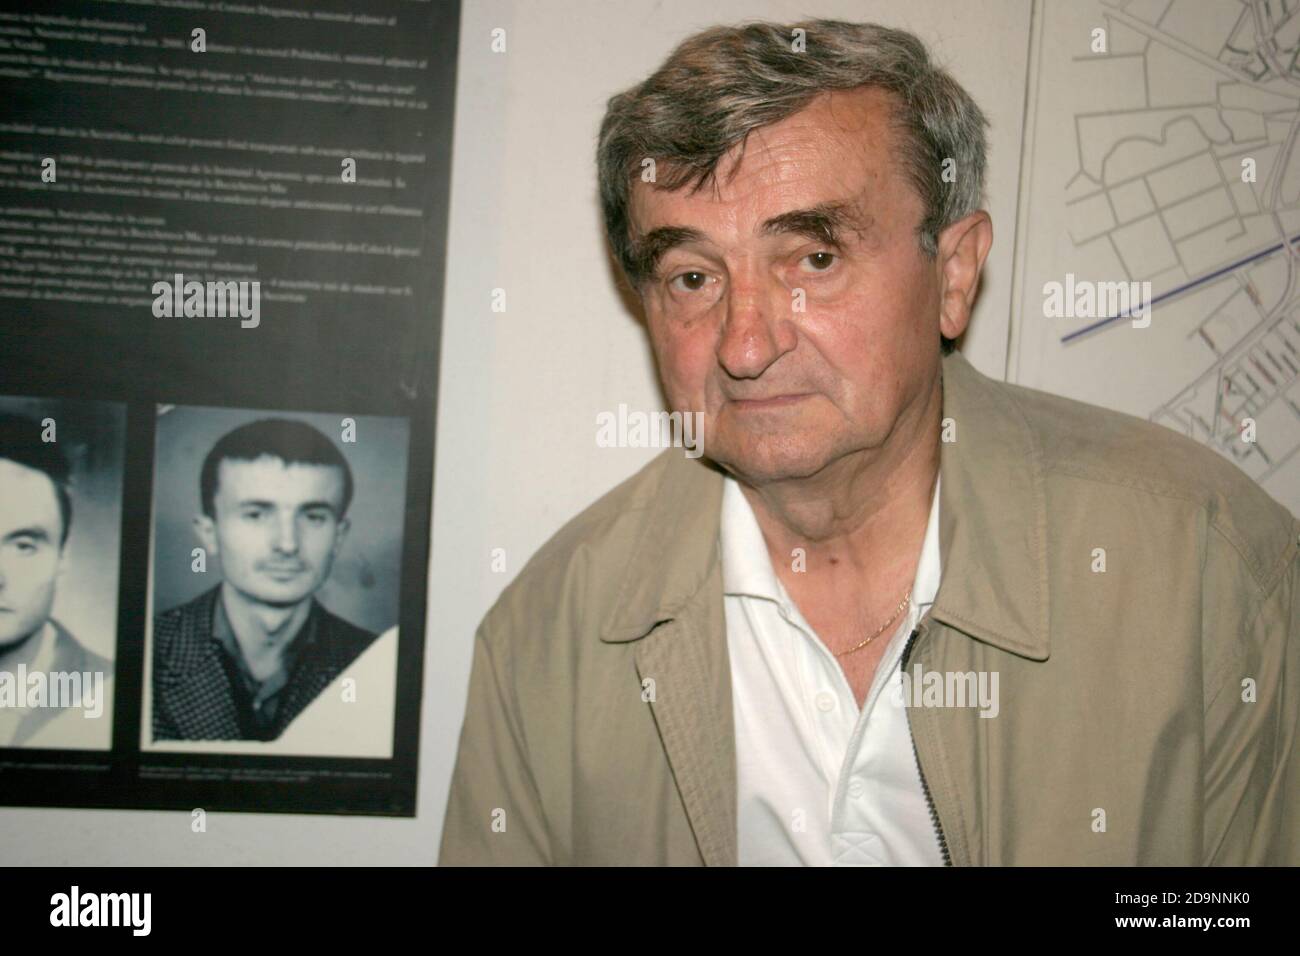 Denkmal der Opfer des Kommunismus, Rumänien. Teodor Stanca, aus politischen Gründen in Sighet inhaftiert, posiert neben einem ausgestellten Porträt von sich selbst. Stockfoto